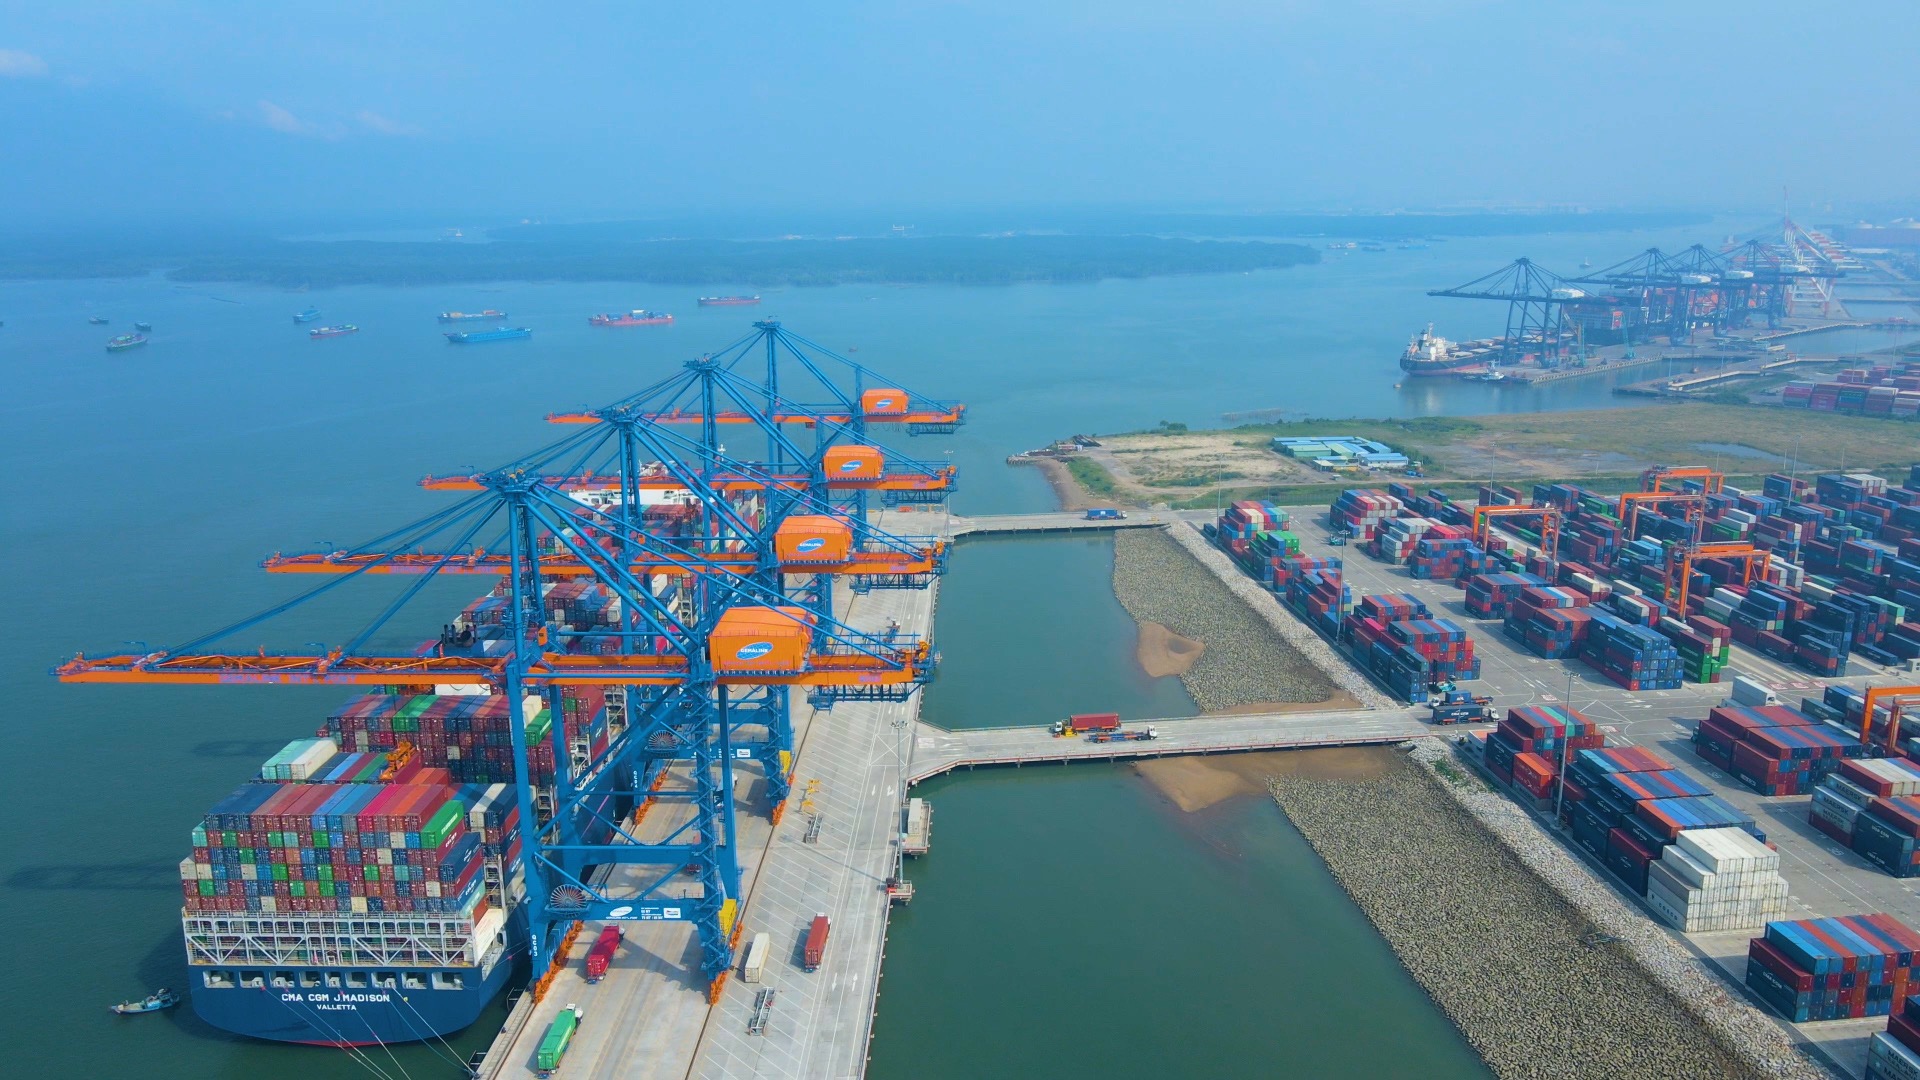 Sau 1 năm đi vào hoạt động, tháng 3/2022, Gemalink chính thức đạt 1 triệu TEU thông qua cảng, lập kỷ lục mới trong ngành khai thác cảng Việt Nam.